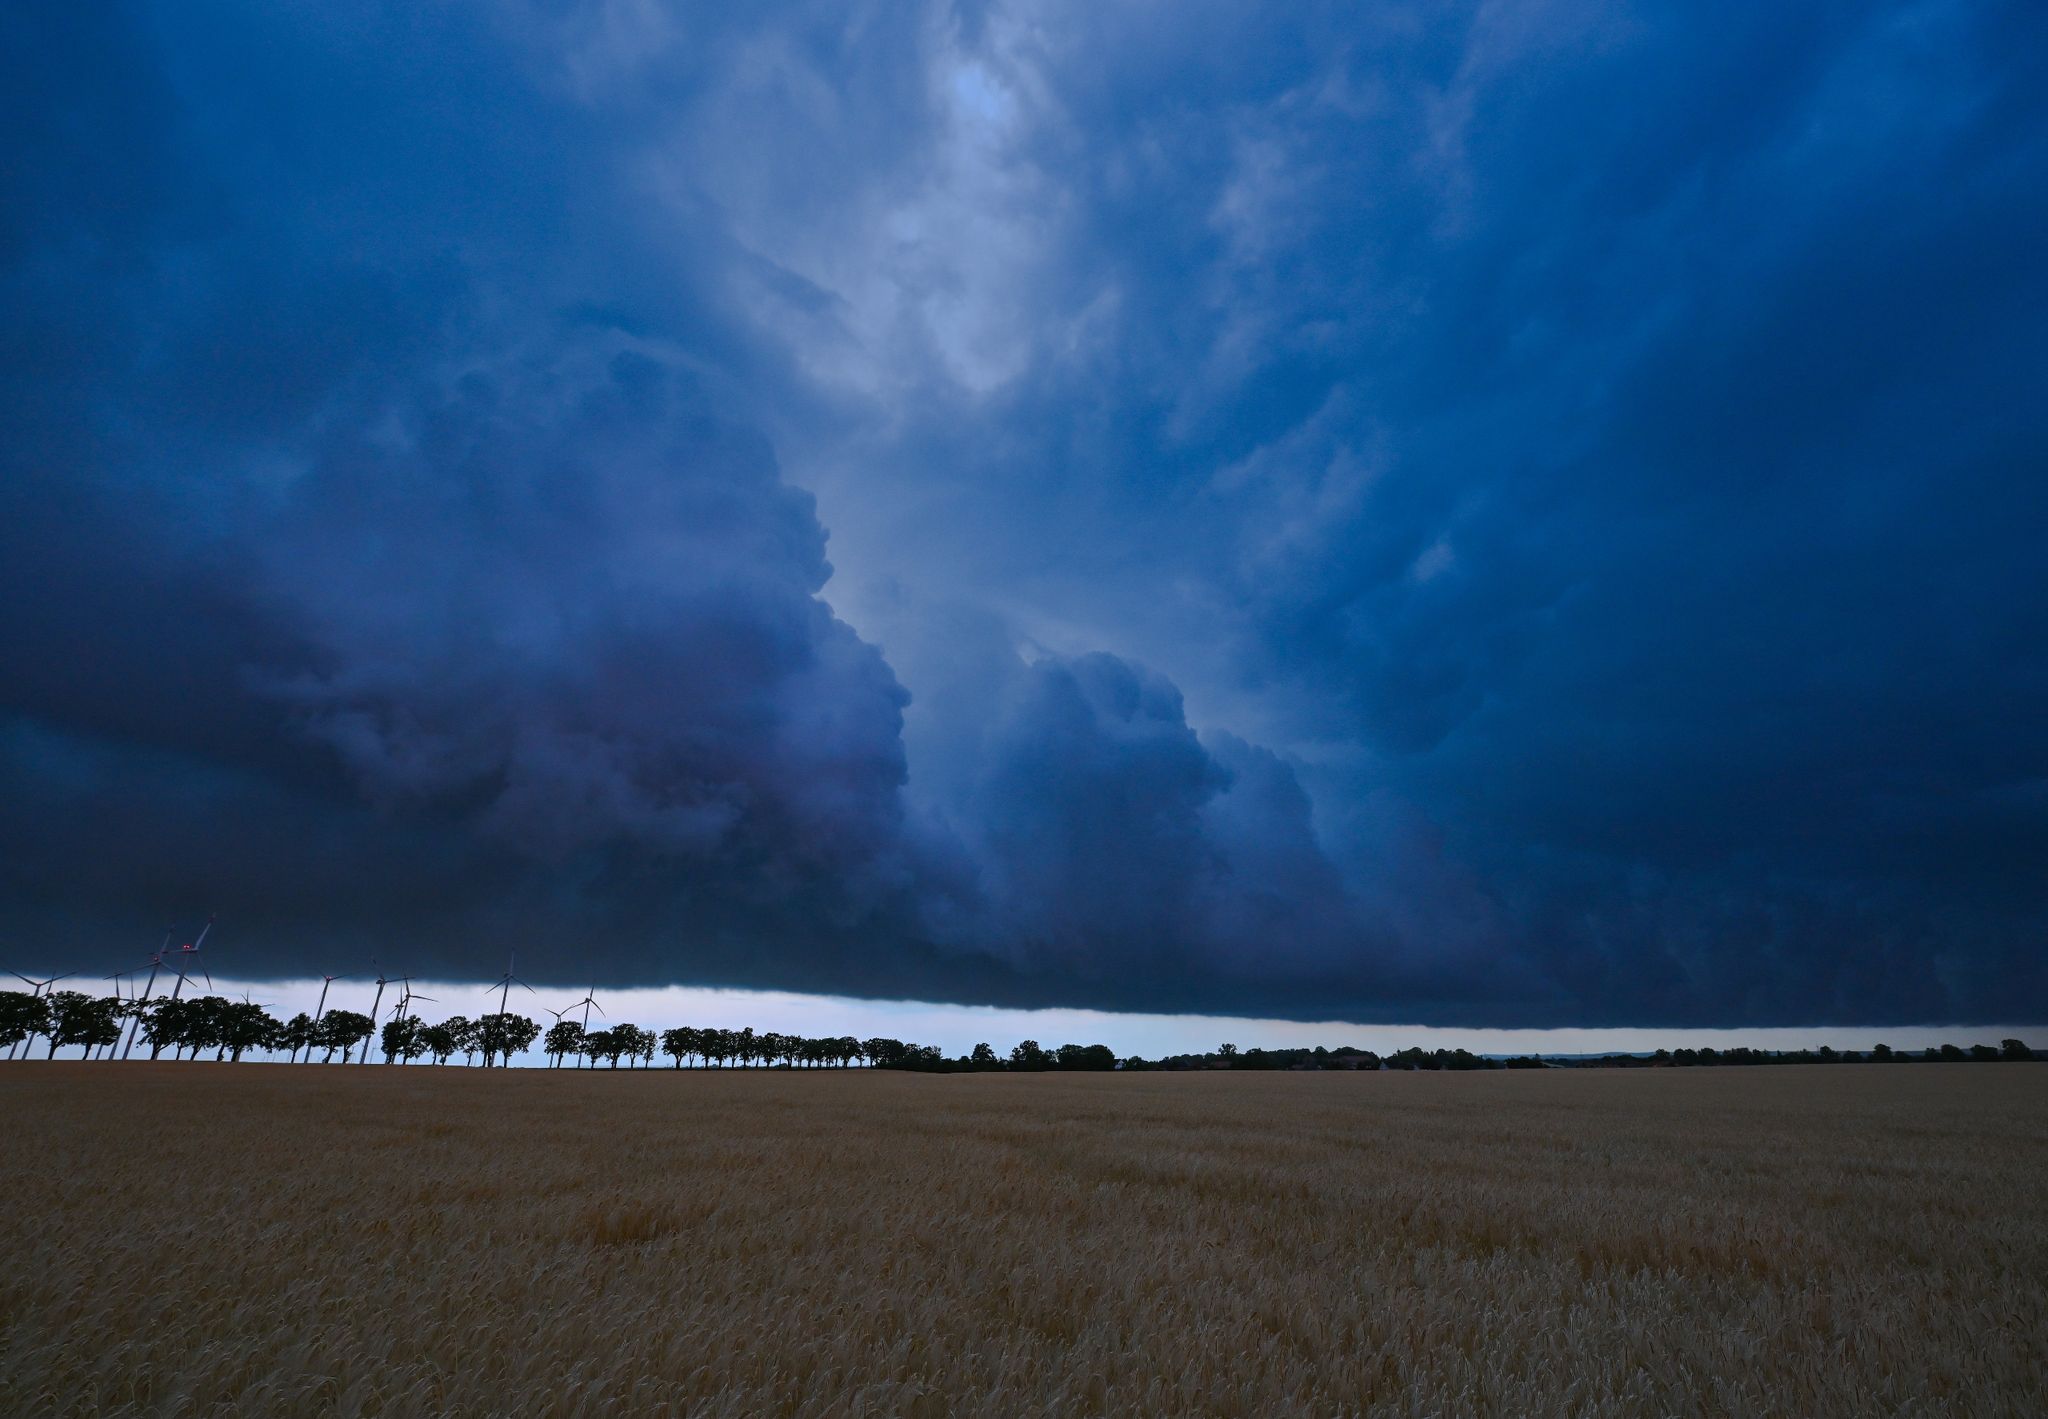 Am späten Abend zieht eine Gewitterzelle mit dunklen Regenwolken über die Landschaft. Der Deutsche Wetterdienst DWD stellte die Klima-Bilanz für das Jahr 2022 vor.